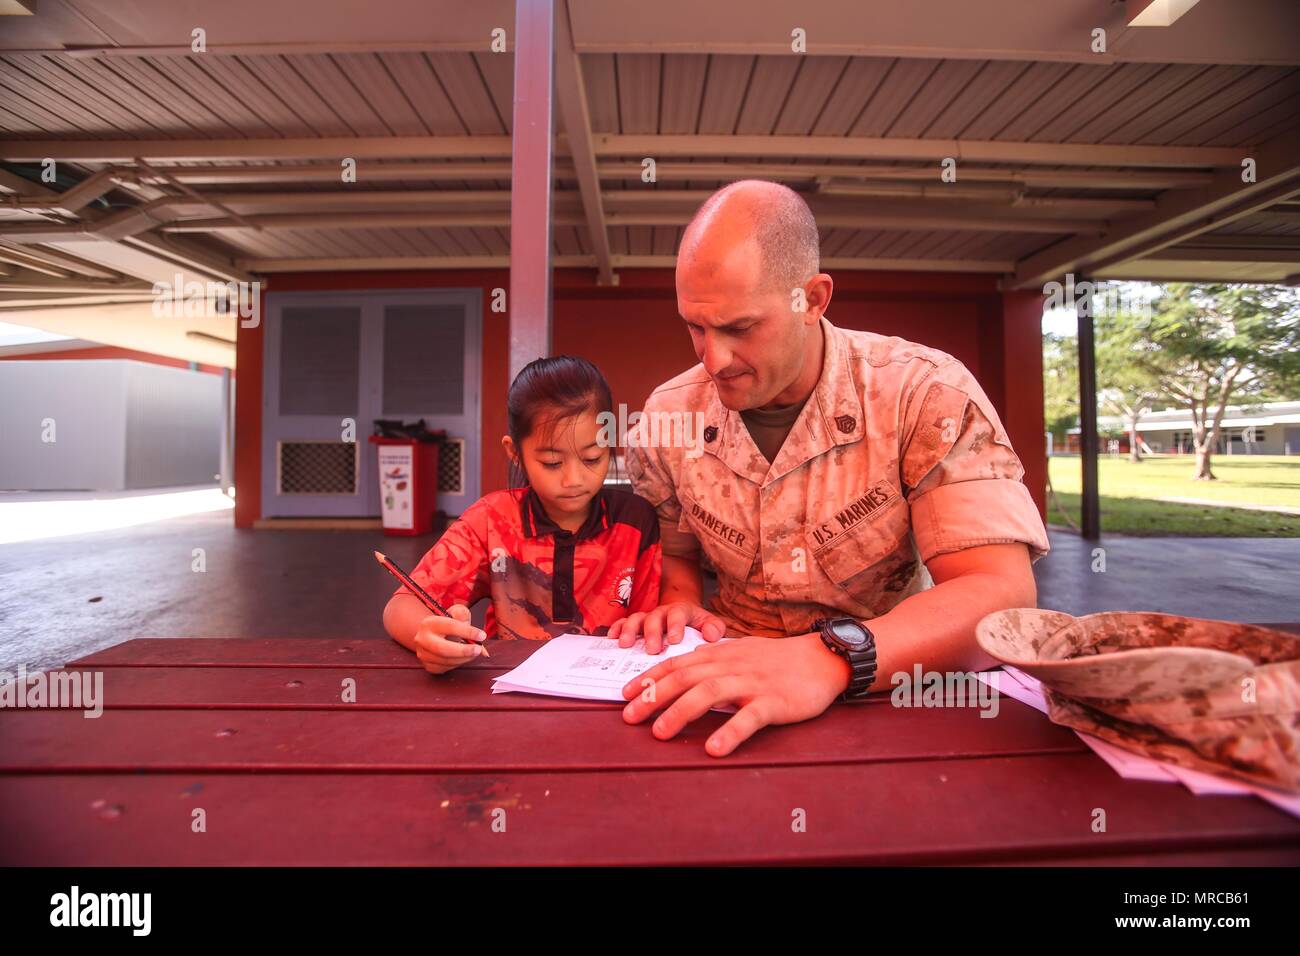 DARWIN Australia - STATI UNITI Il personale marino Sgt. Il Bret Daneker, plotone sergente, azienda I, 3° Battaglione, 4° Reggimento Marini, 1° Divisione Marine, Marine forza rotazionale di Darwin, tutor un bambino con la sua grammatica lavoro scuola durante un evento di volontariato, 31 maggio 2017. Lo stesso gruppo di Marines continuerà la visita e guida gli studenti durante tutto il loro tempo in Darwin. I marines si sono impegnati a servire la comunità locale e continuerà ad avere un impatto quando disponibile. (U.S. Marine Corps foto di Sgt. Emmanuel Ramos) Foto Stock